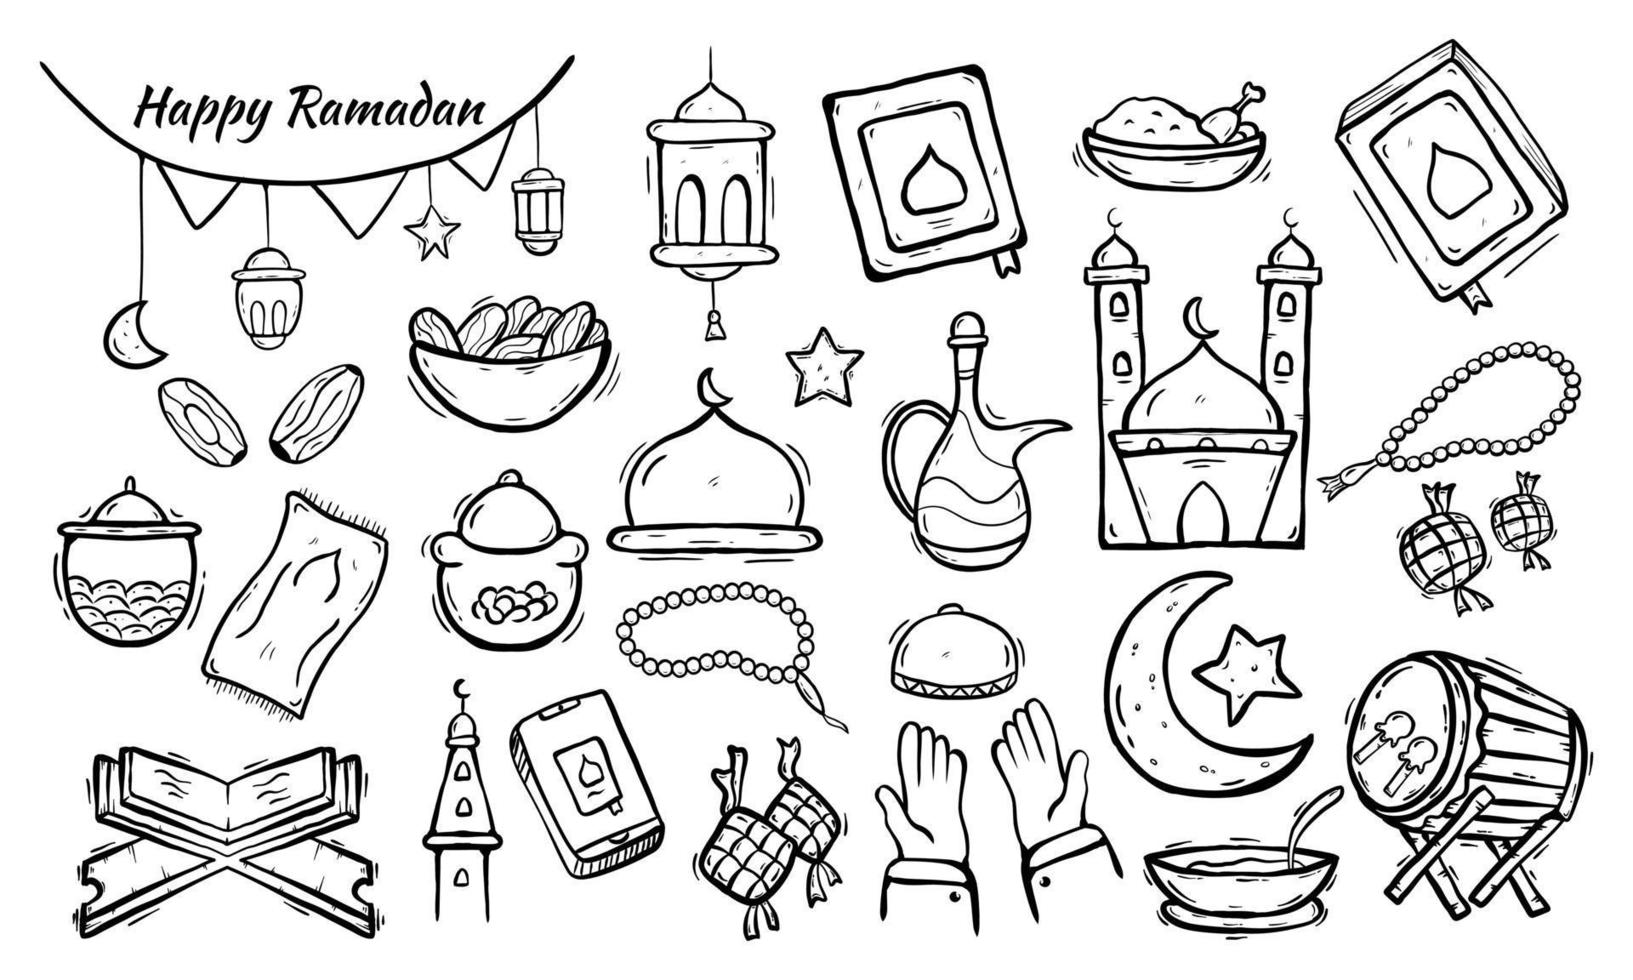 uppsättning av islamiska doodle element relaterade till holly ramadan. designkoncept islamiska symboler och ikoner med handritad skissstil vektor